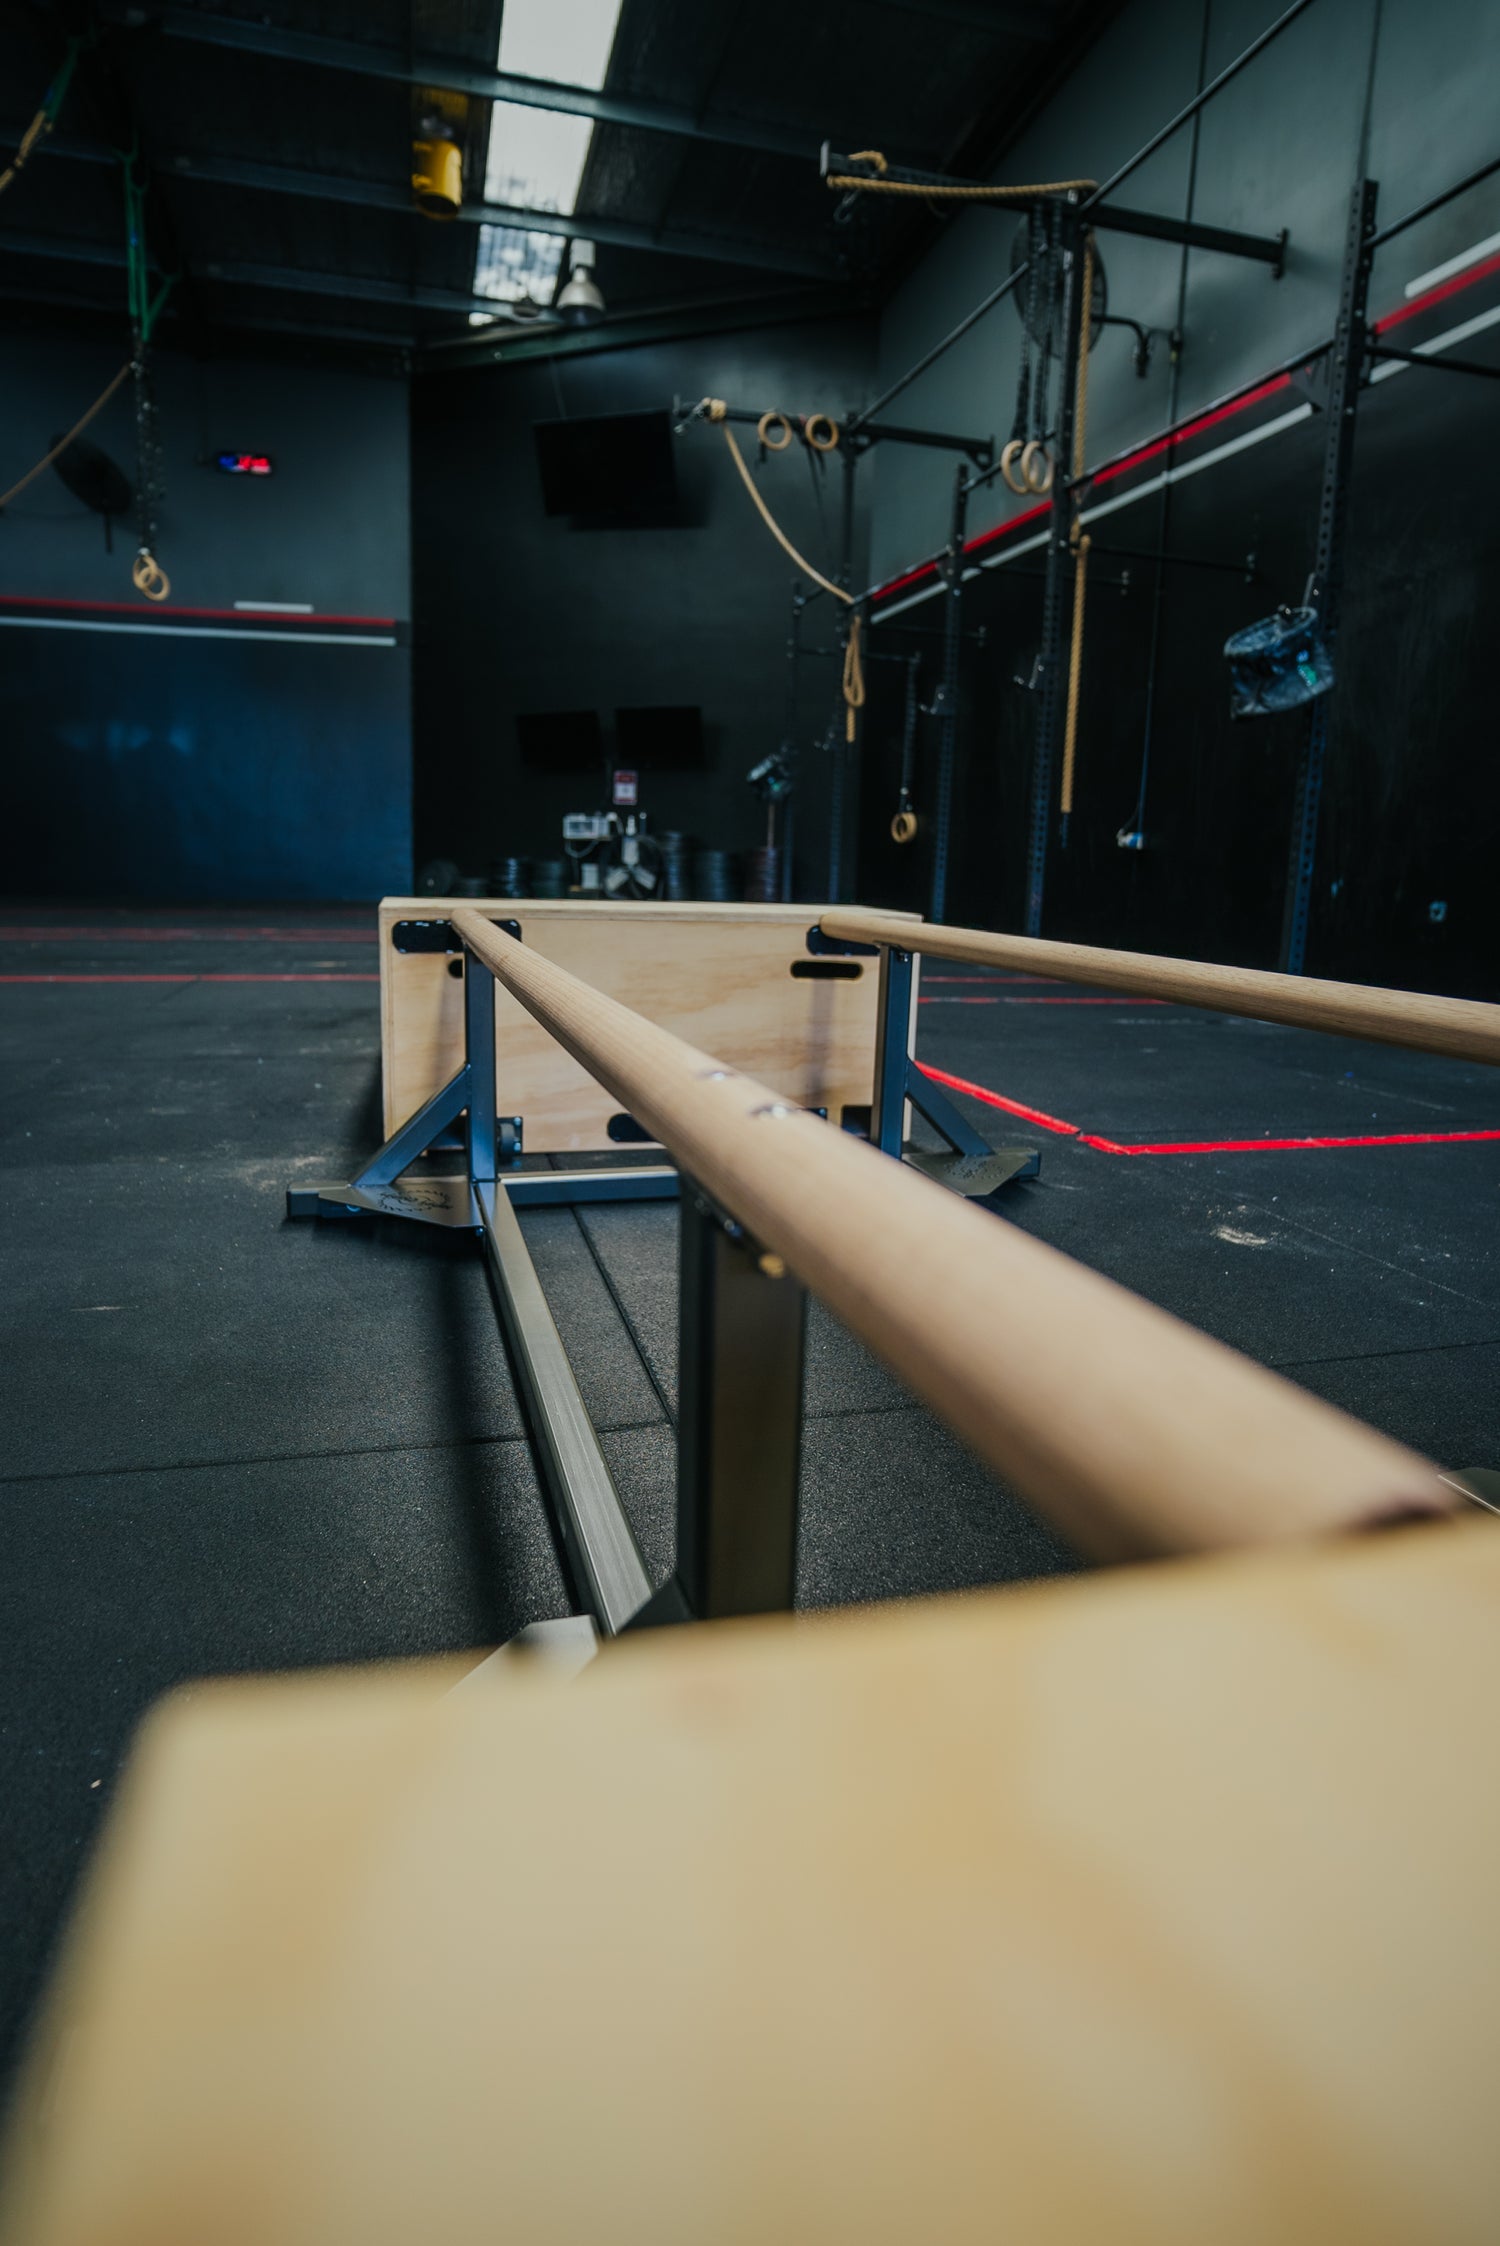 CrossFit gymnastics calisthenic parrallette bars